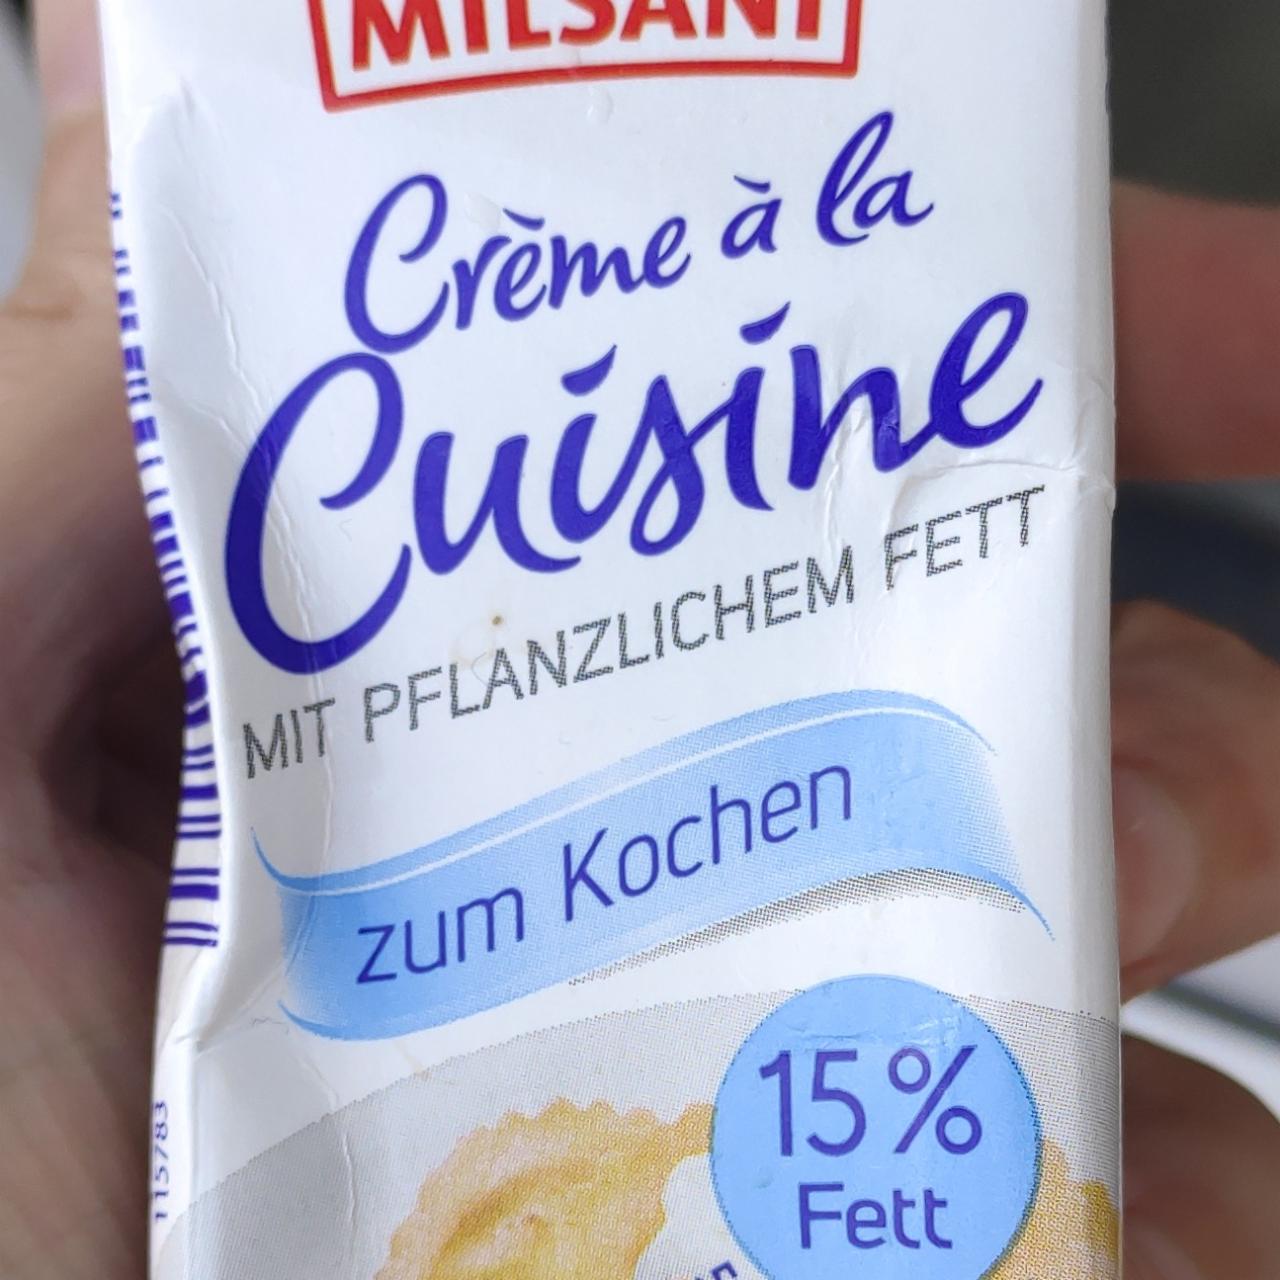 Fotografie - Crème à la Cruisine 15% Fett Milsani